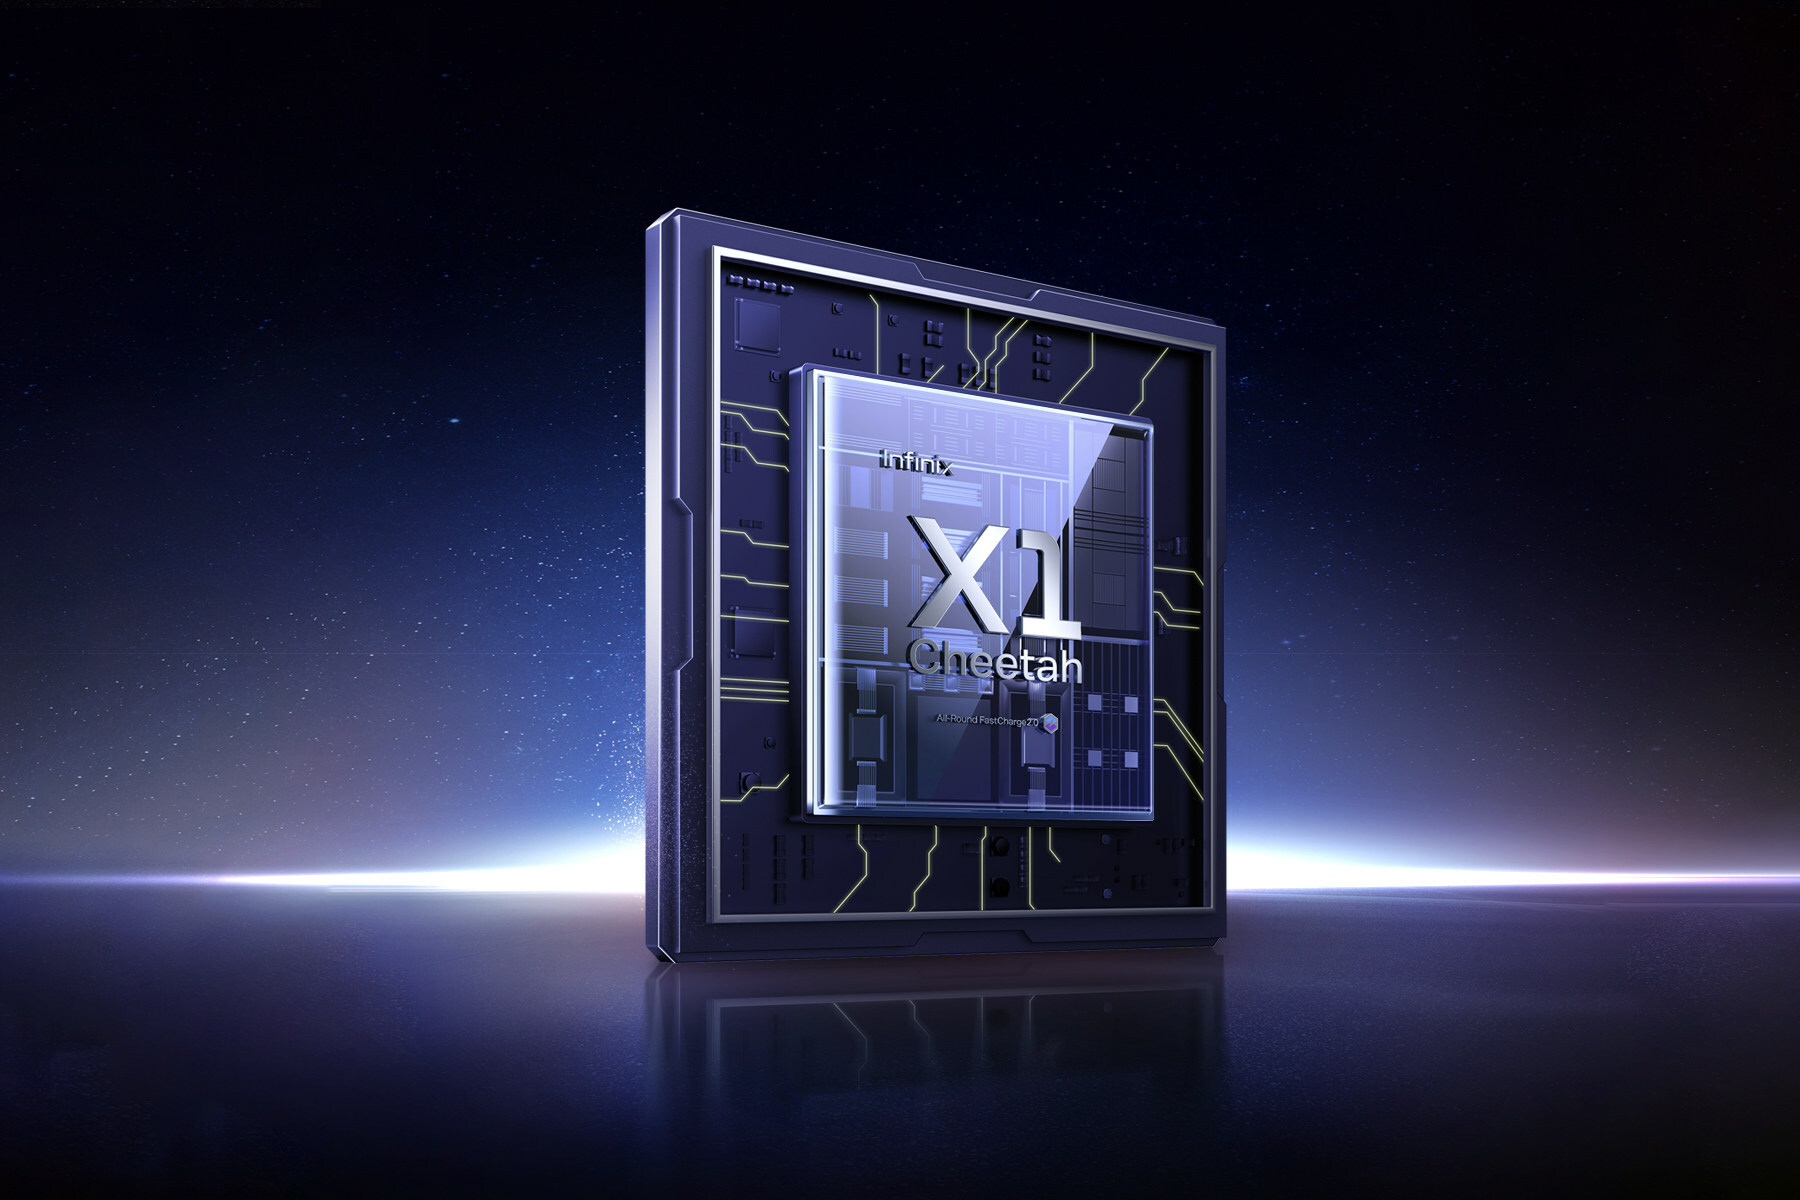 Infinix Introduces Cheetah X1 Chip